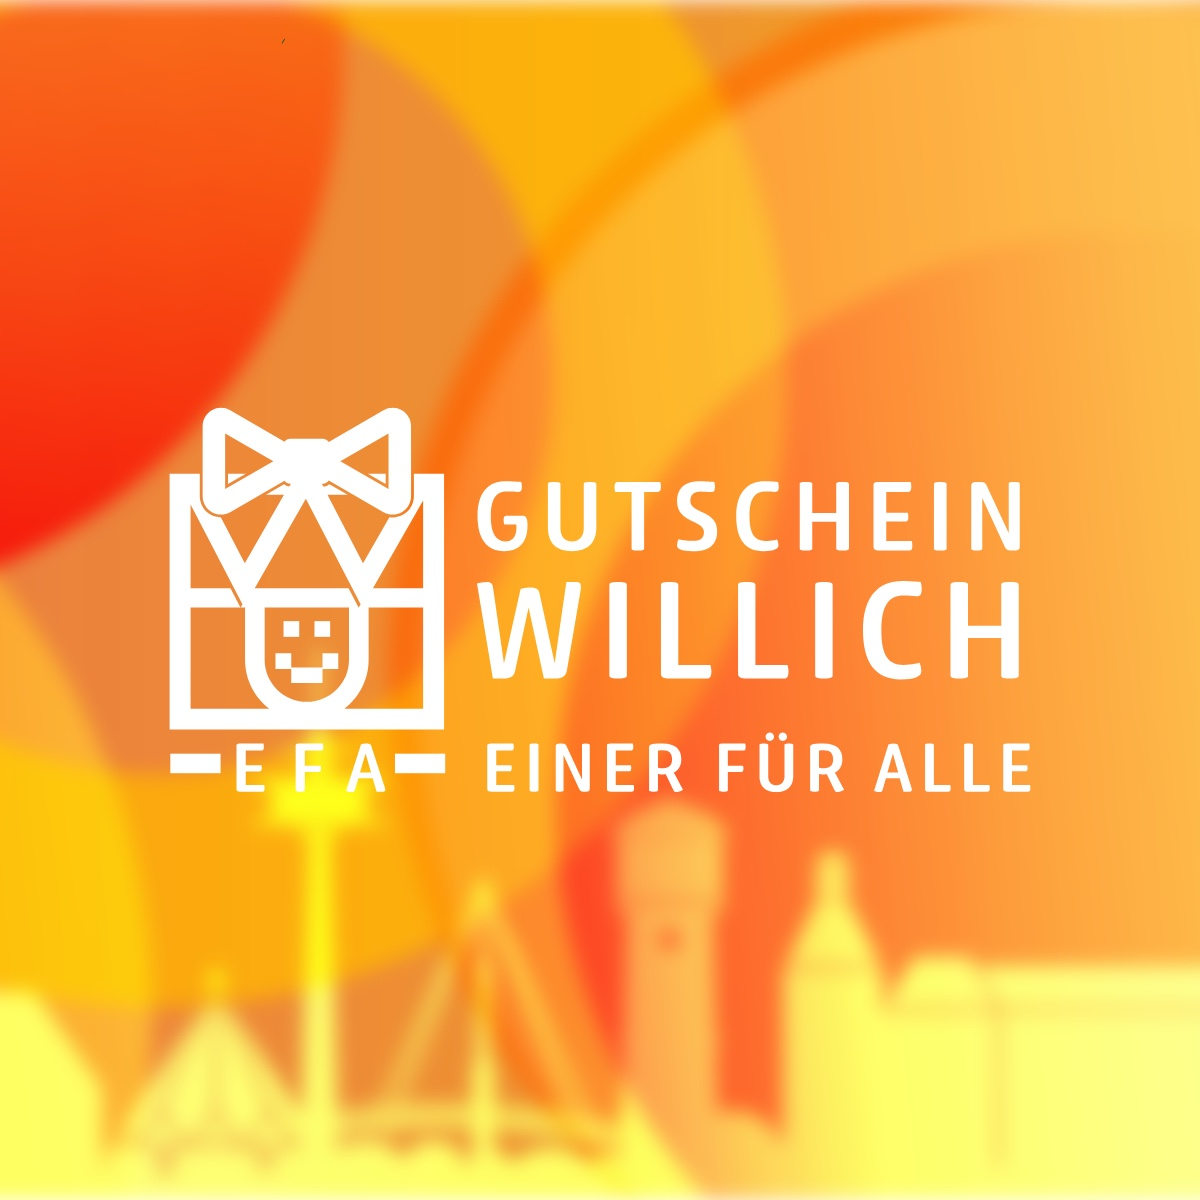 (c) Gutschein-willich.de